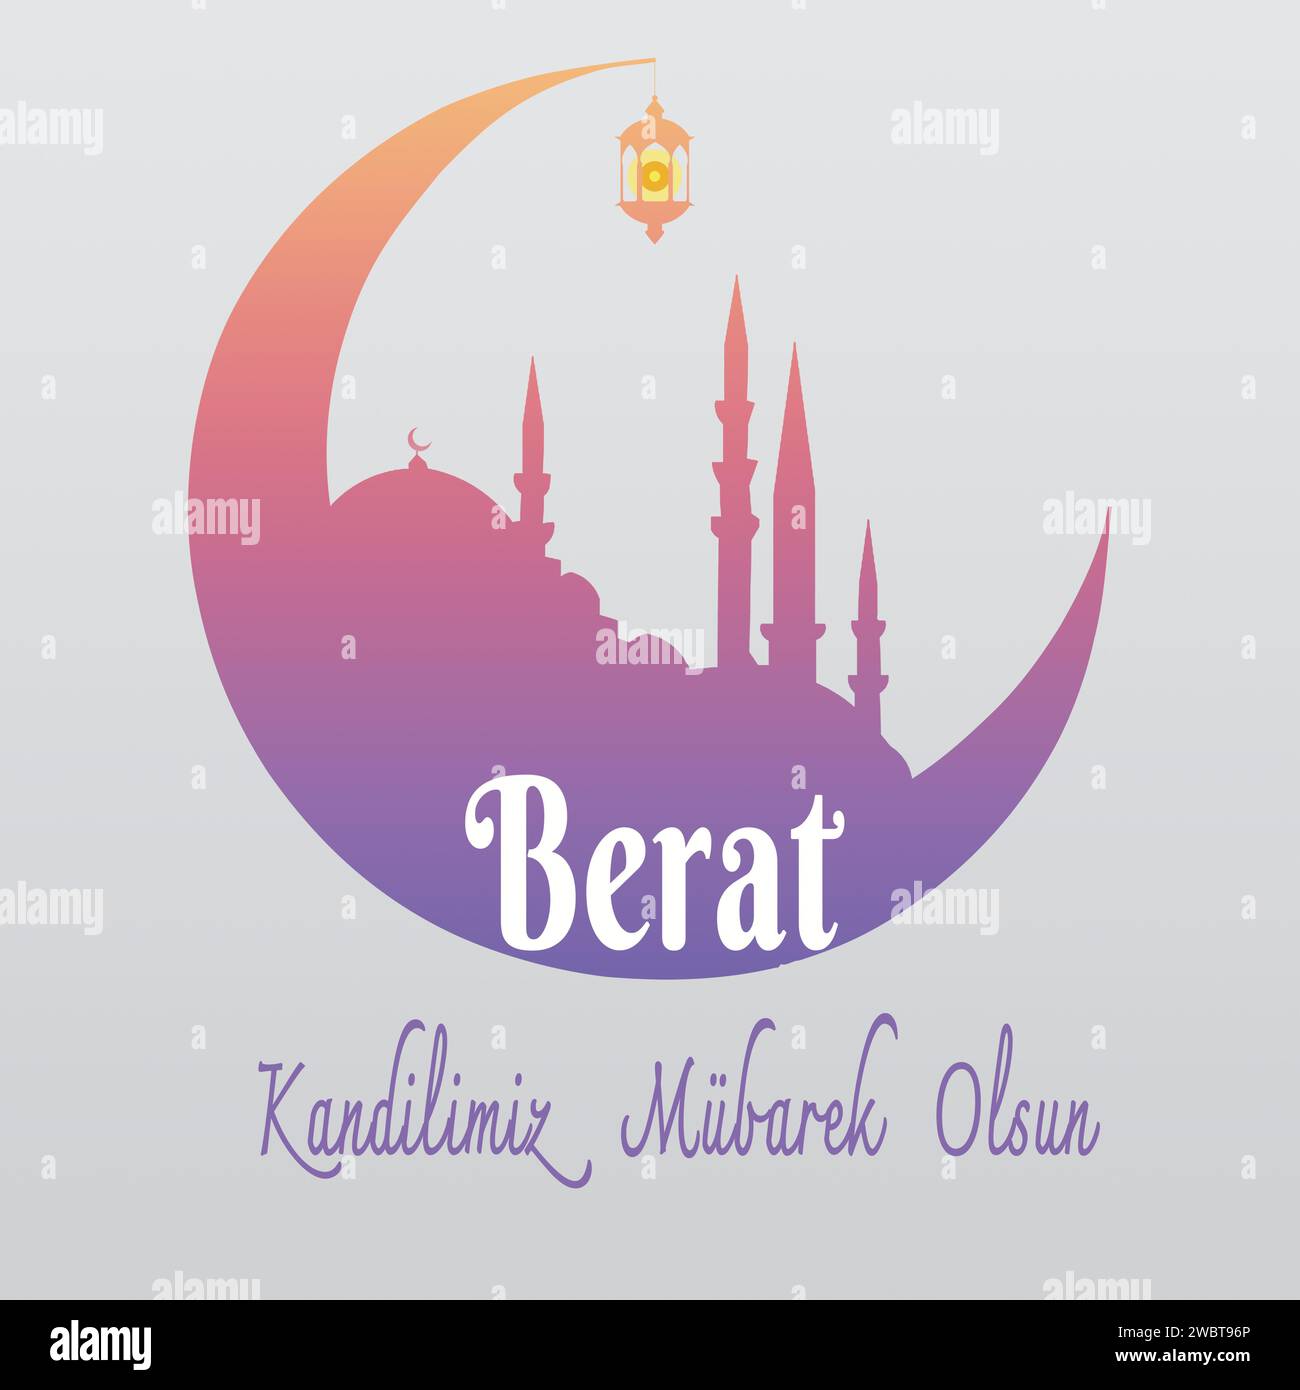 Berat Kandilimiz Mubarek Olsun. Berat Kandili. Festa musulmana, festa. Vettore del concetto di notte Santa islamica. Illustrazione Vettoriale